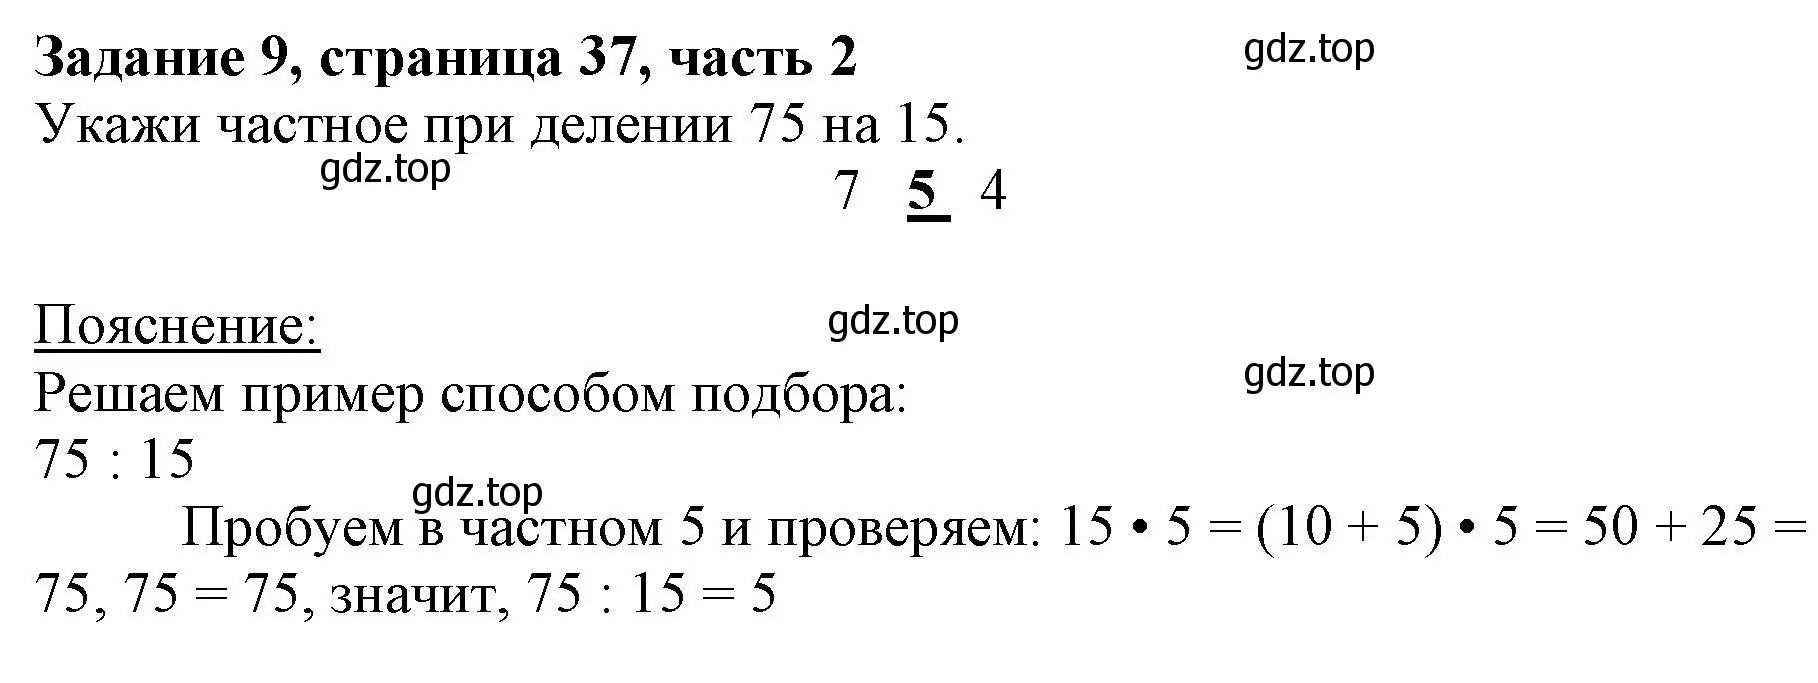 Решение номер 9 (страница 37) гдз по математике 3 класс Моро, Бантова, учебник 2 часть